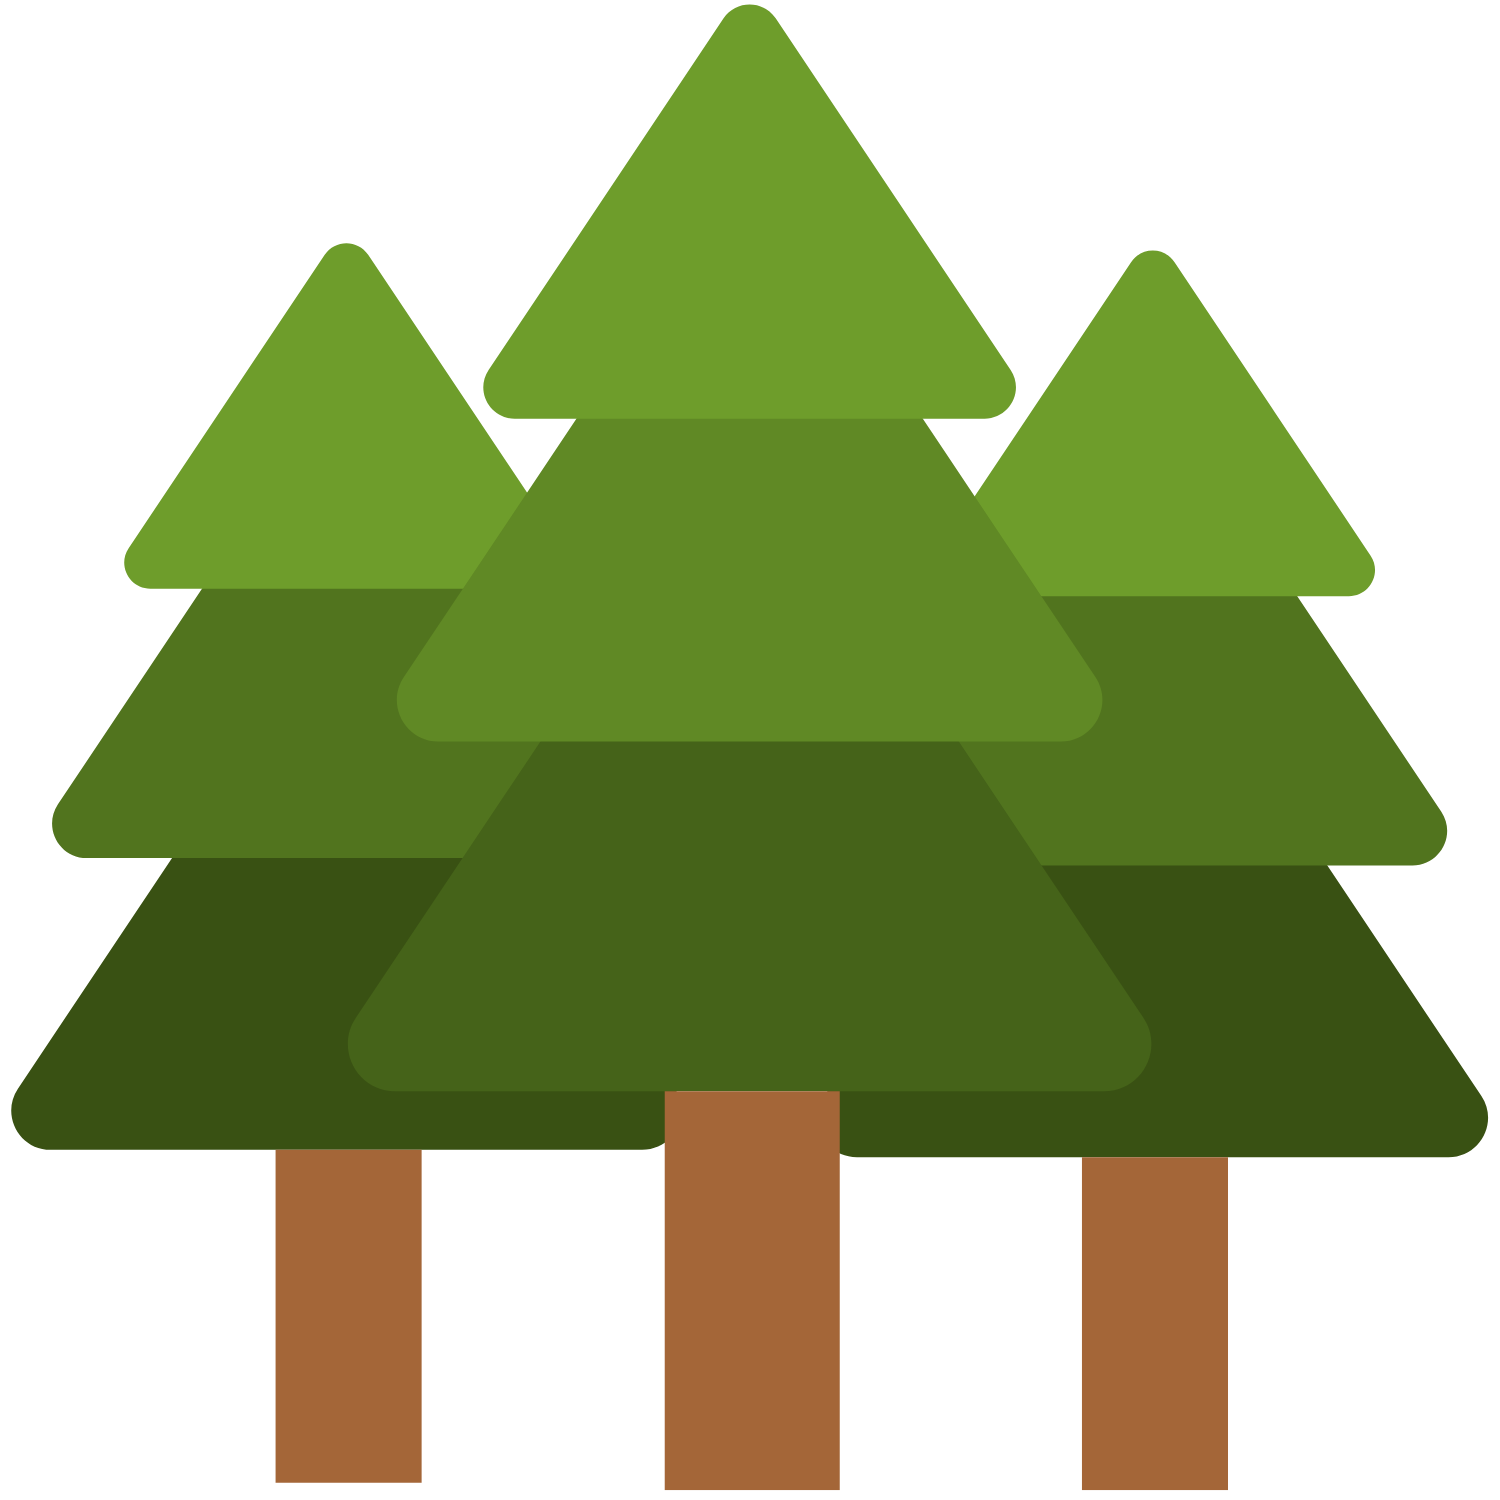 Cartoon illustration of three pine trees.